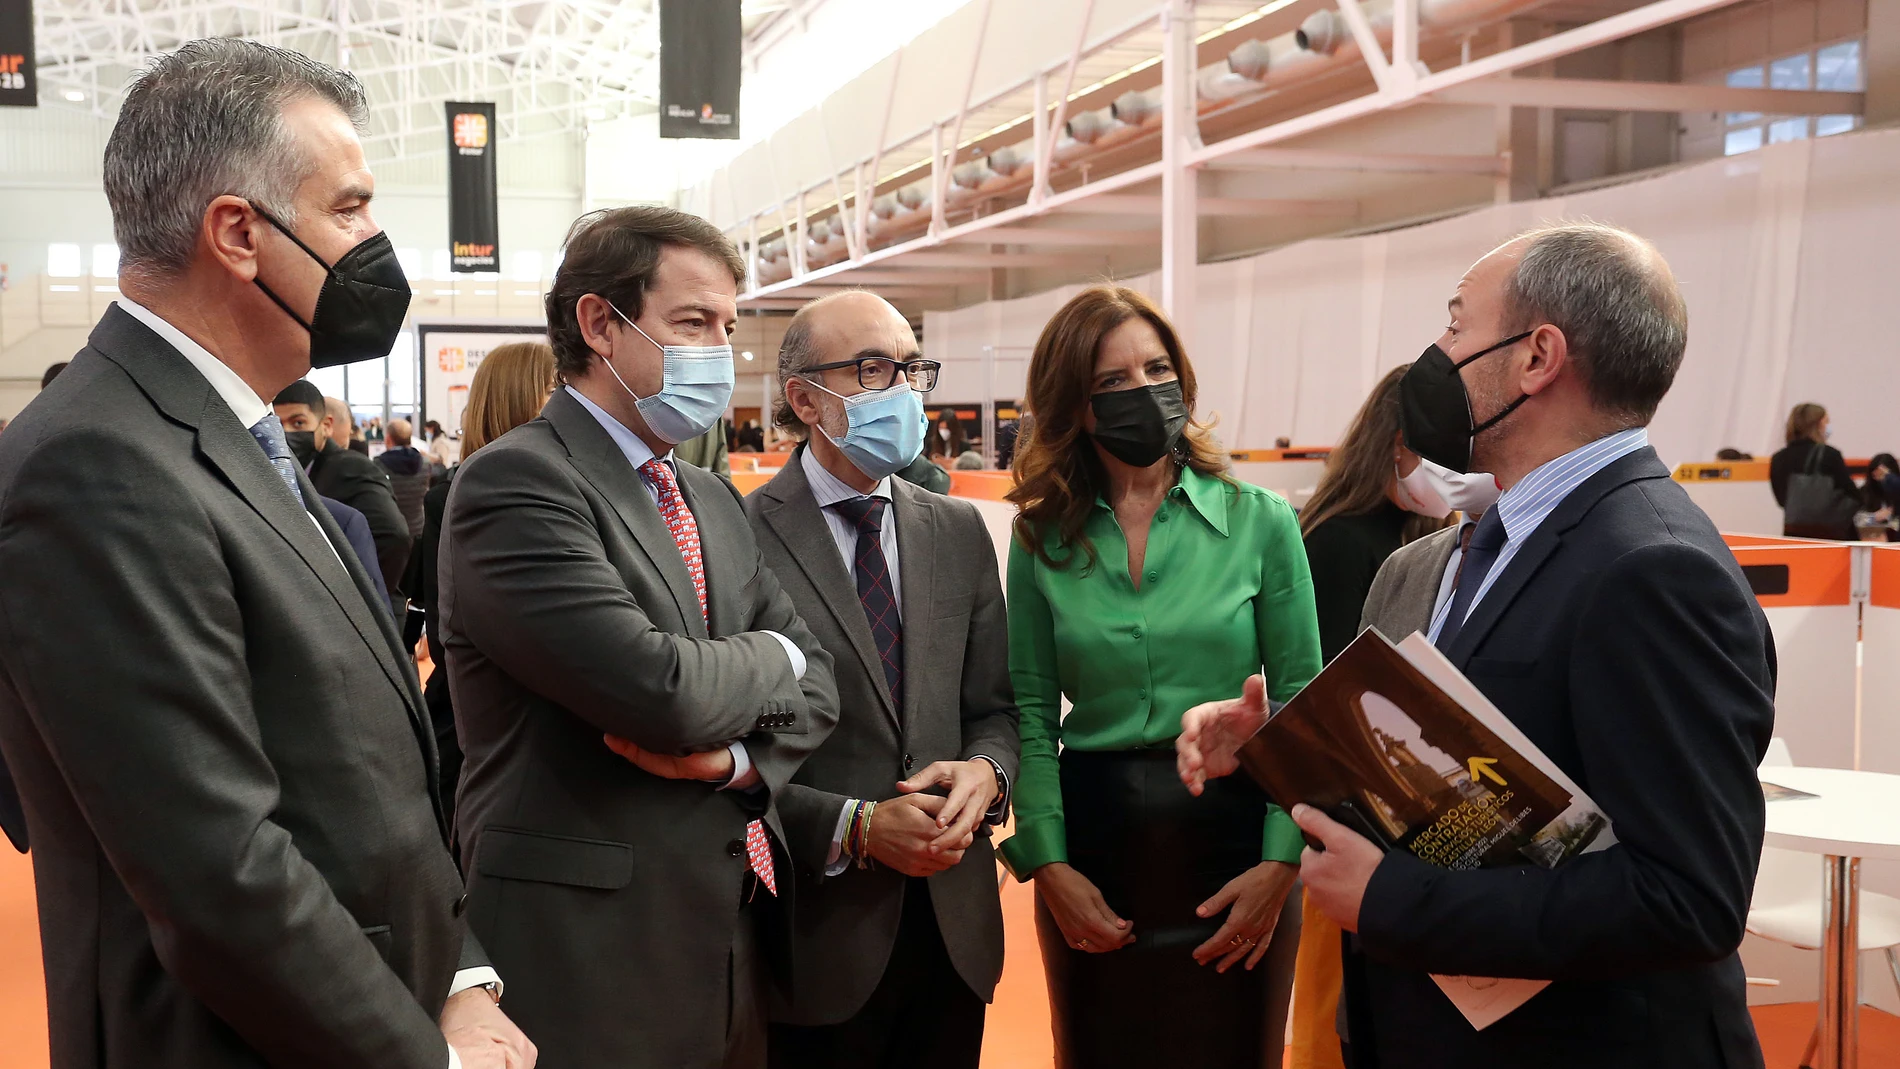 El presidente de la Junta de Castilla y León, Alfonso Fernández Mañueco, visita "Intur Negocios", junto a Javier Ortega, Ana Carlota Amigo y Alberto Alonso